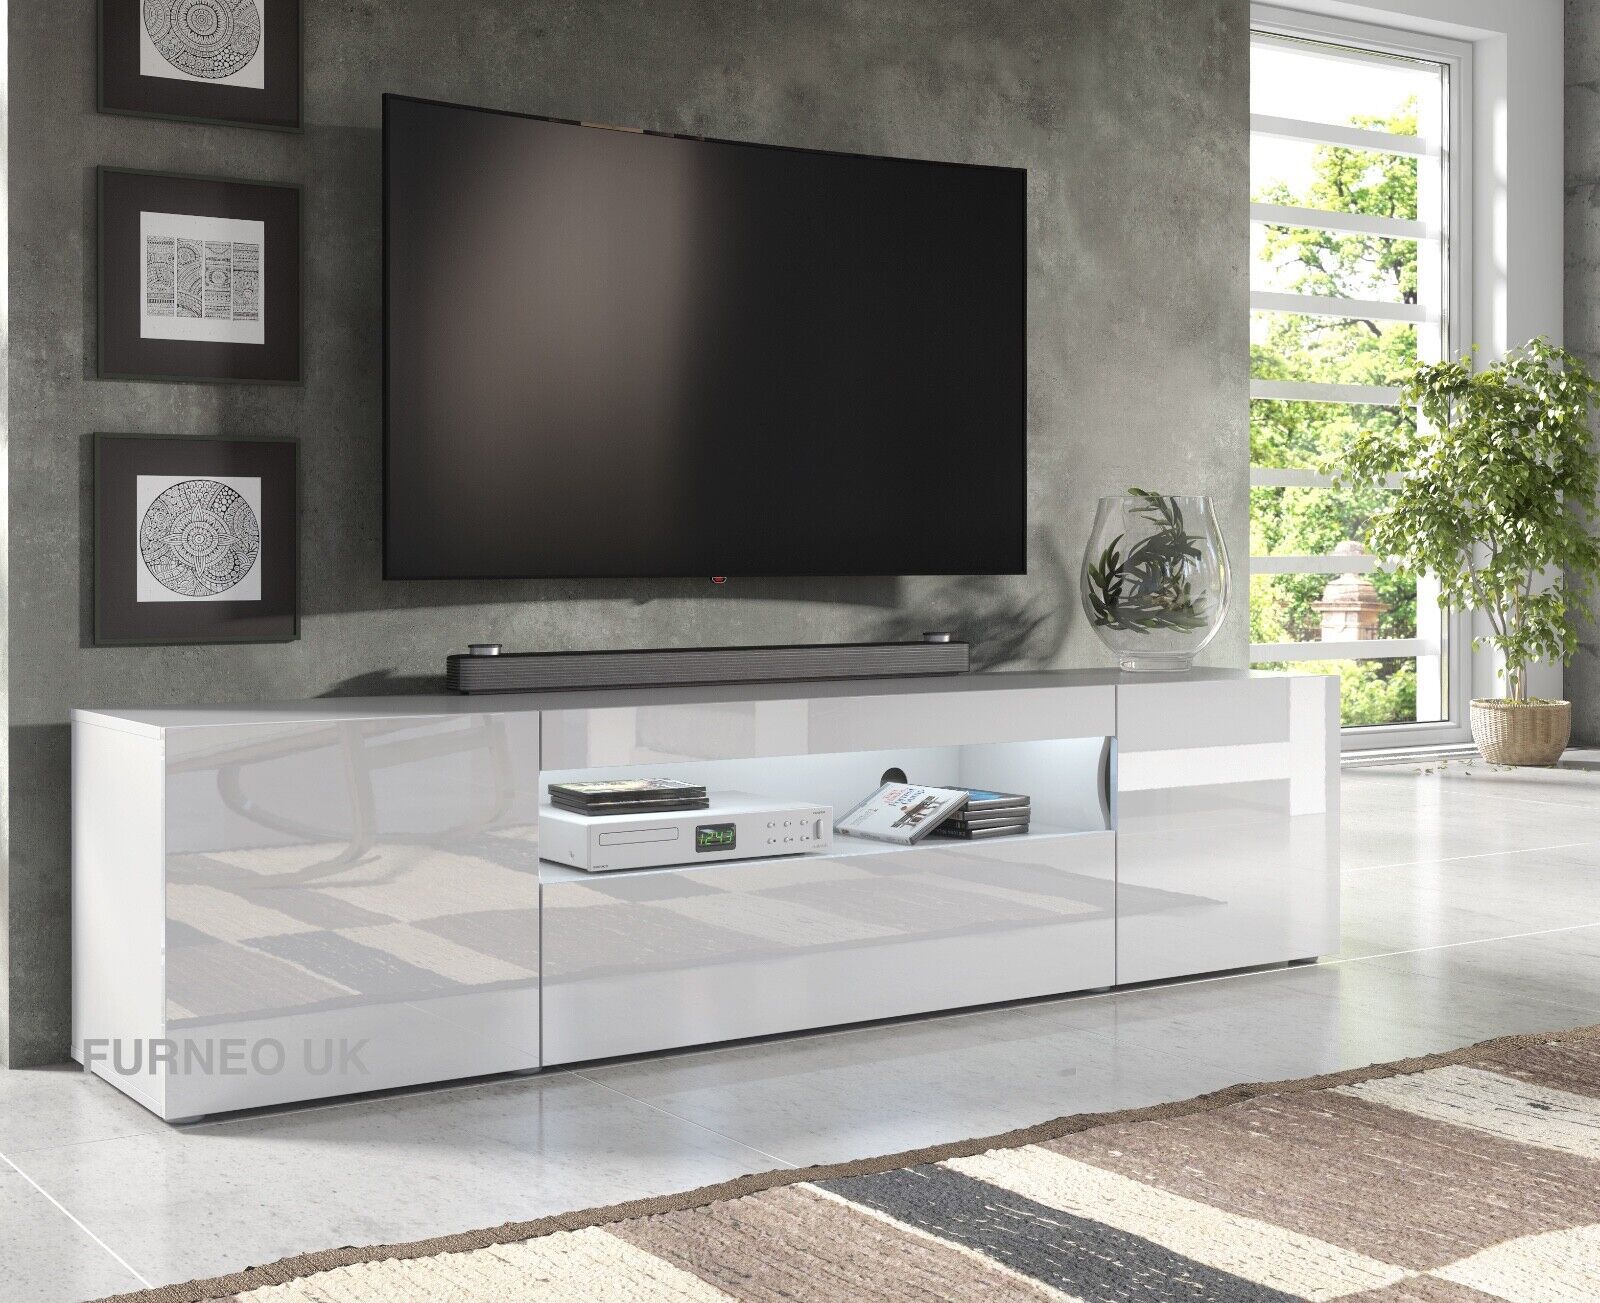 200cm Tv Stand White Unit Modern Long Cabinet Gloss &matt Clifton8 Led  Lights | Ebay Intended For White Tv Stands Entertainment Center (Photo 1 of 15)